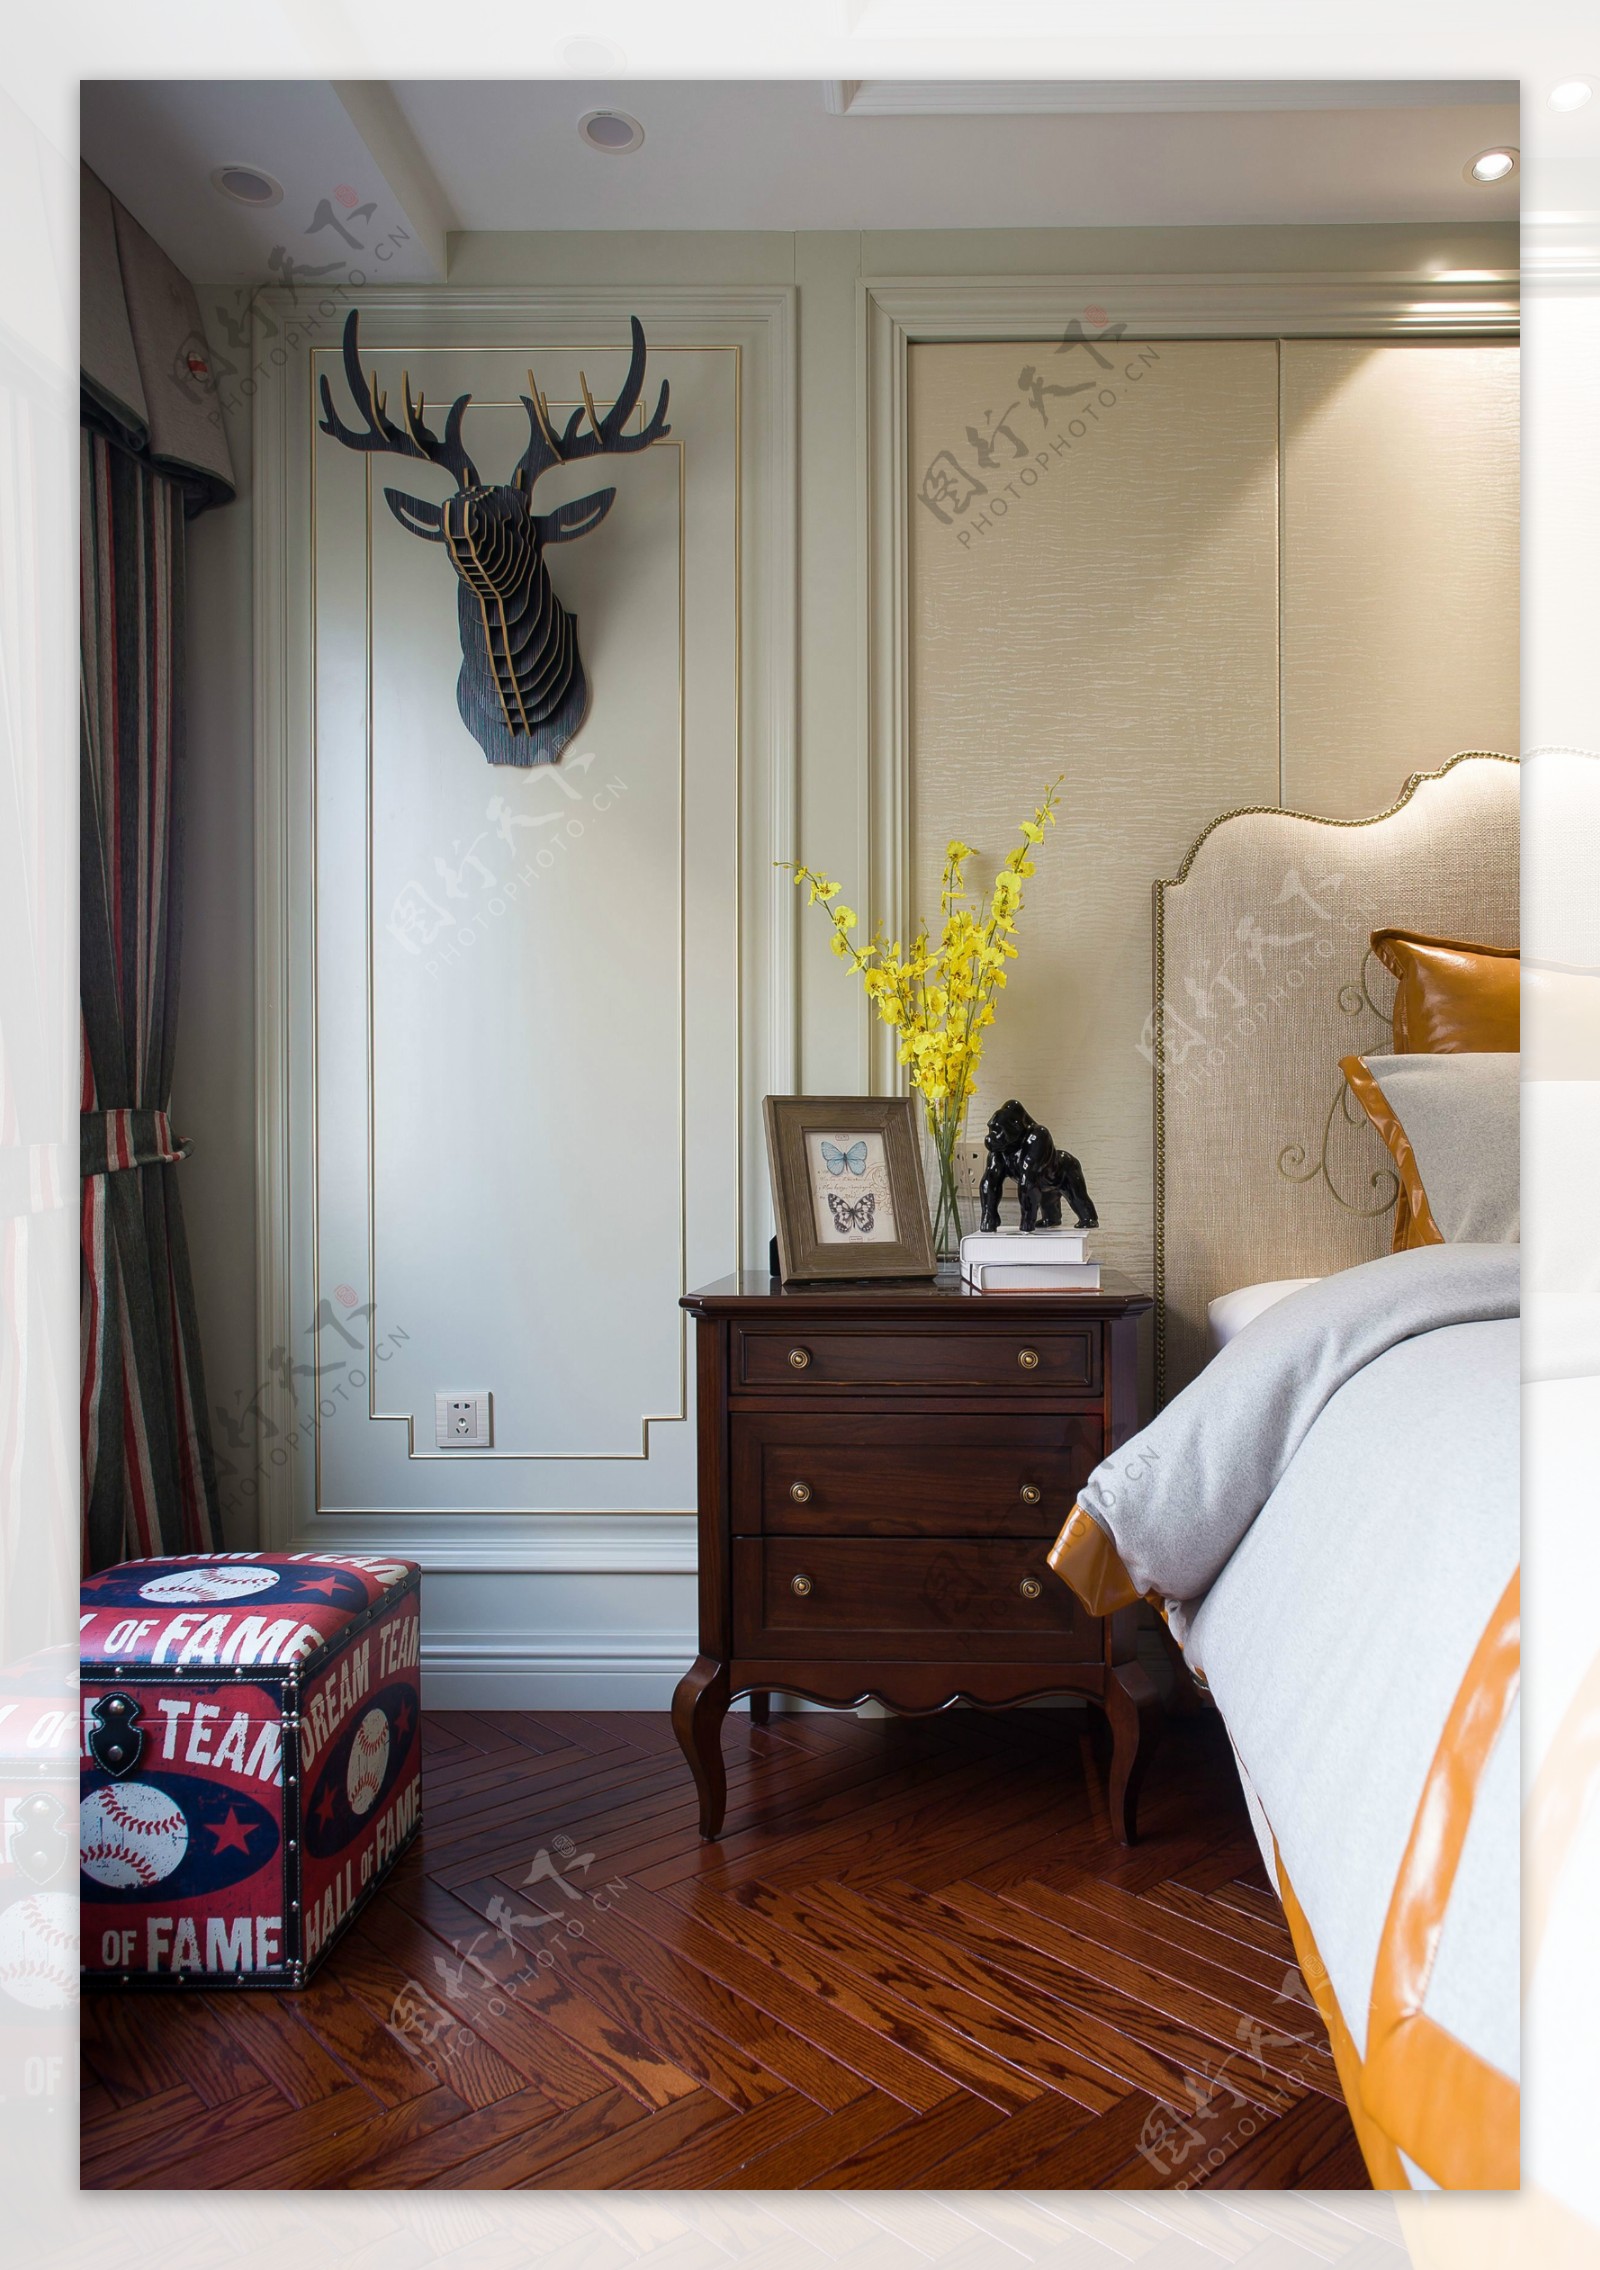 美式时尚卧室红木床头柜装修效果图